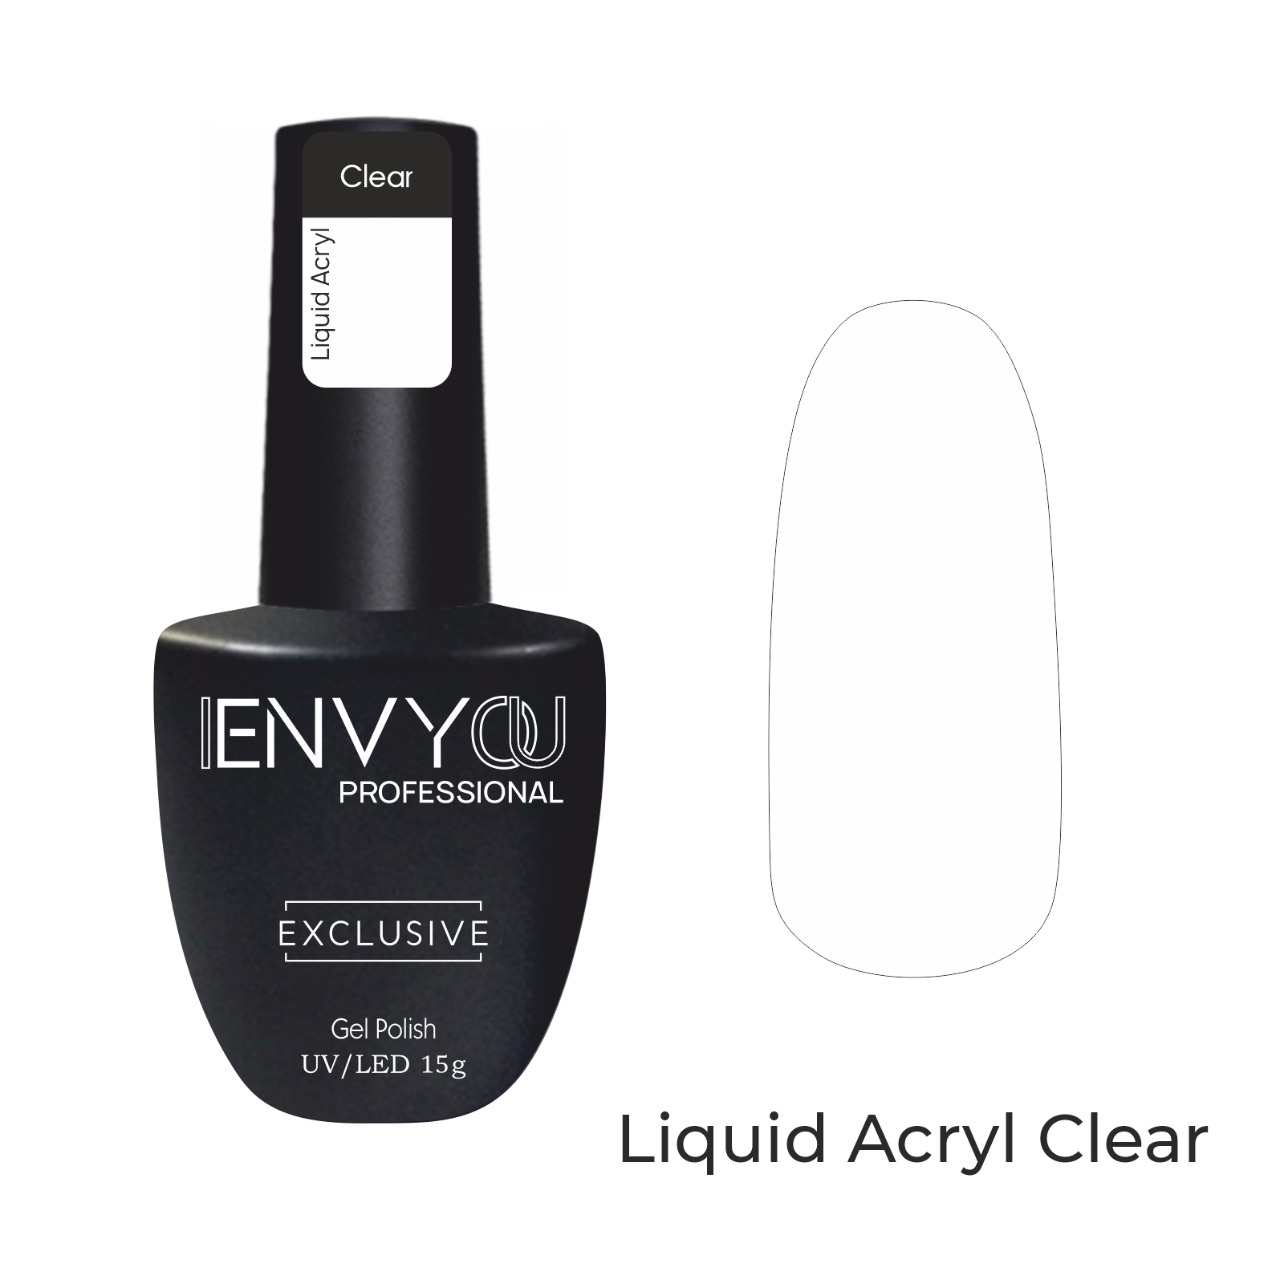 I ENVY YOU Liquid Acryl Gel, 15g (Clear)